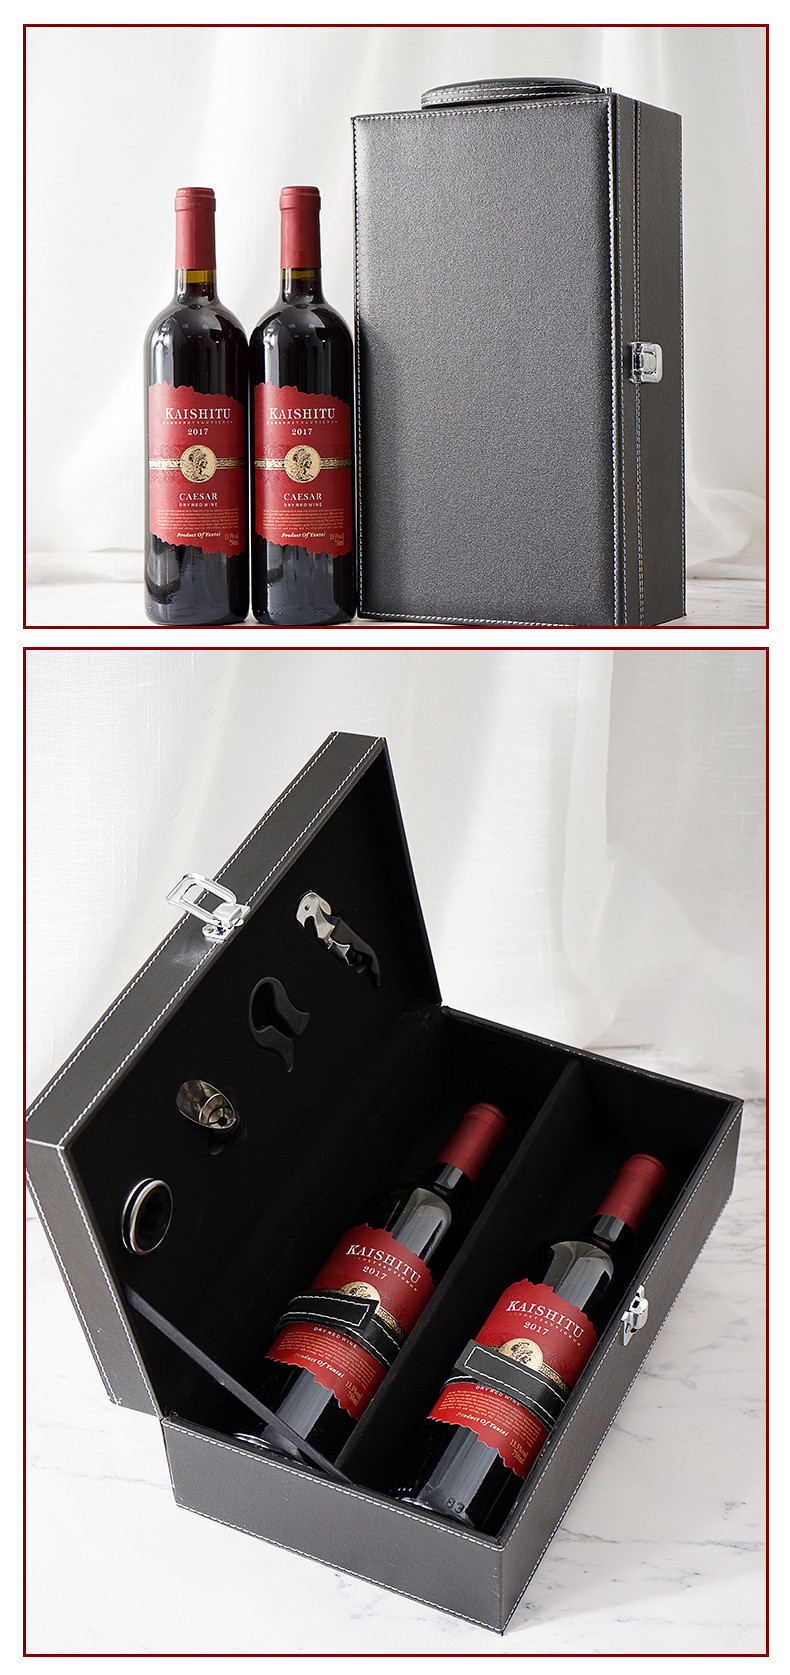  法国稀有14度干红葡萄酒750ml 双支凯撒红酒+皮盒套装 红酒礼盒装